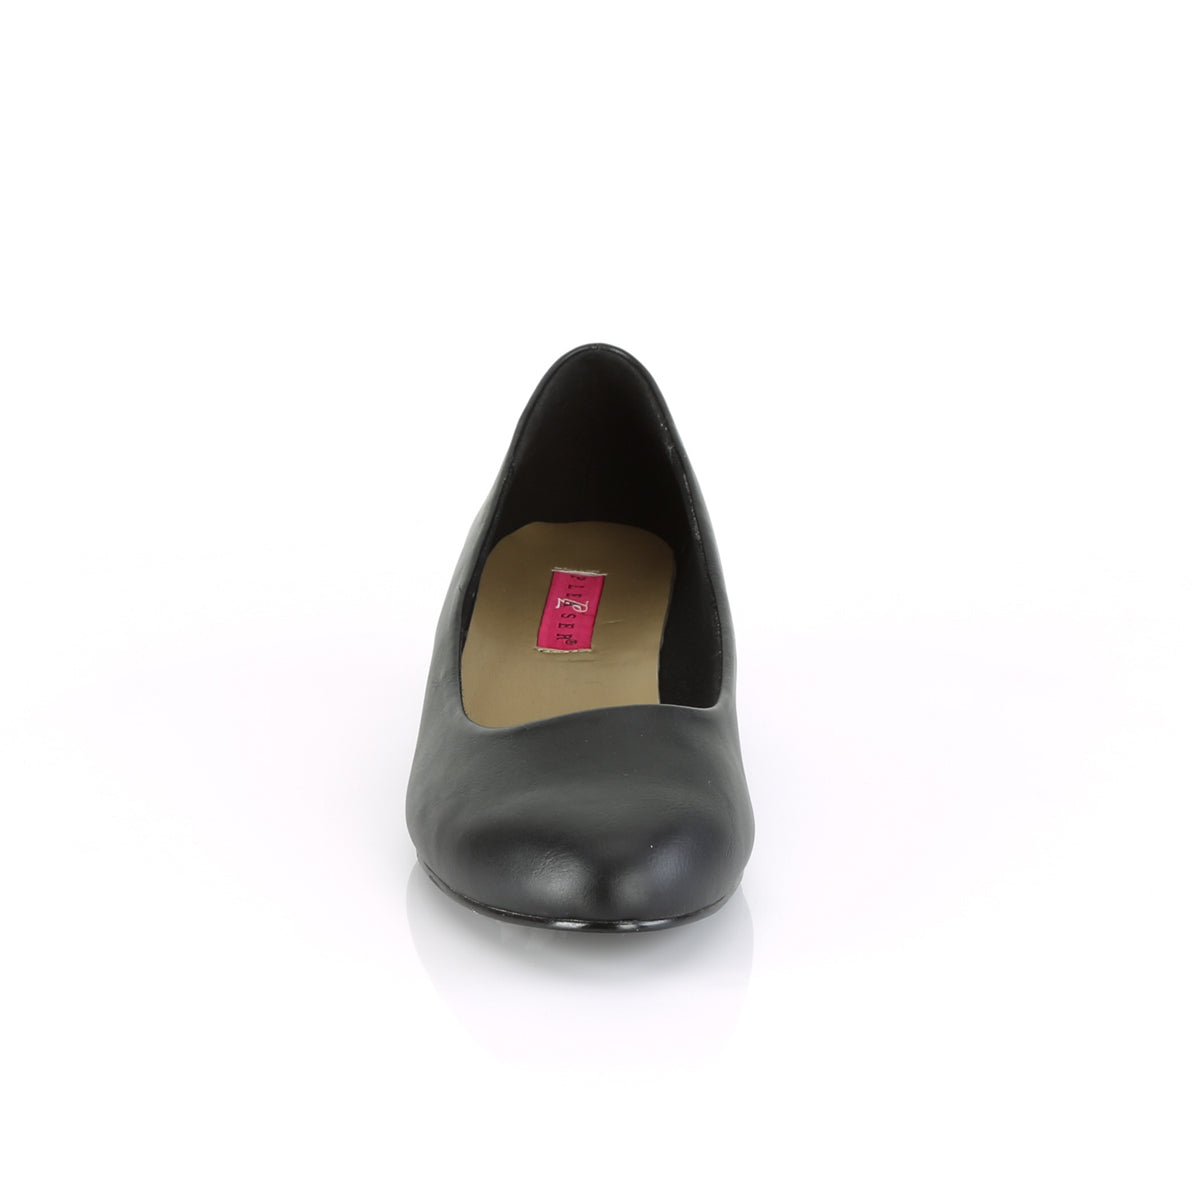 GWEN-01 Large Size Ladies Shoes Pleaser Pink Label Single Soles Black Faux Leather